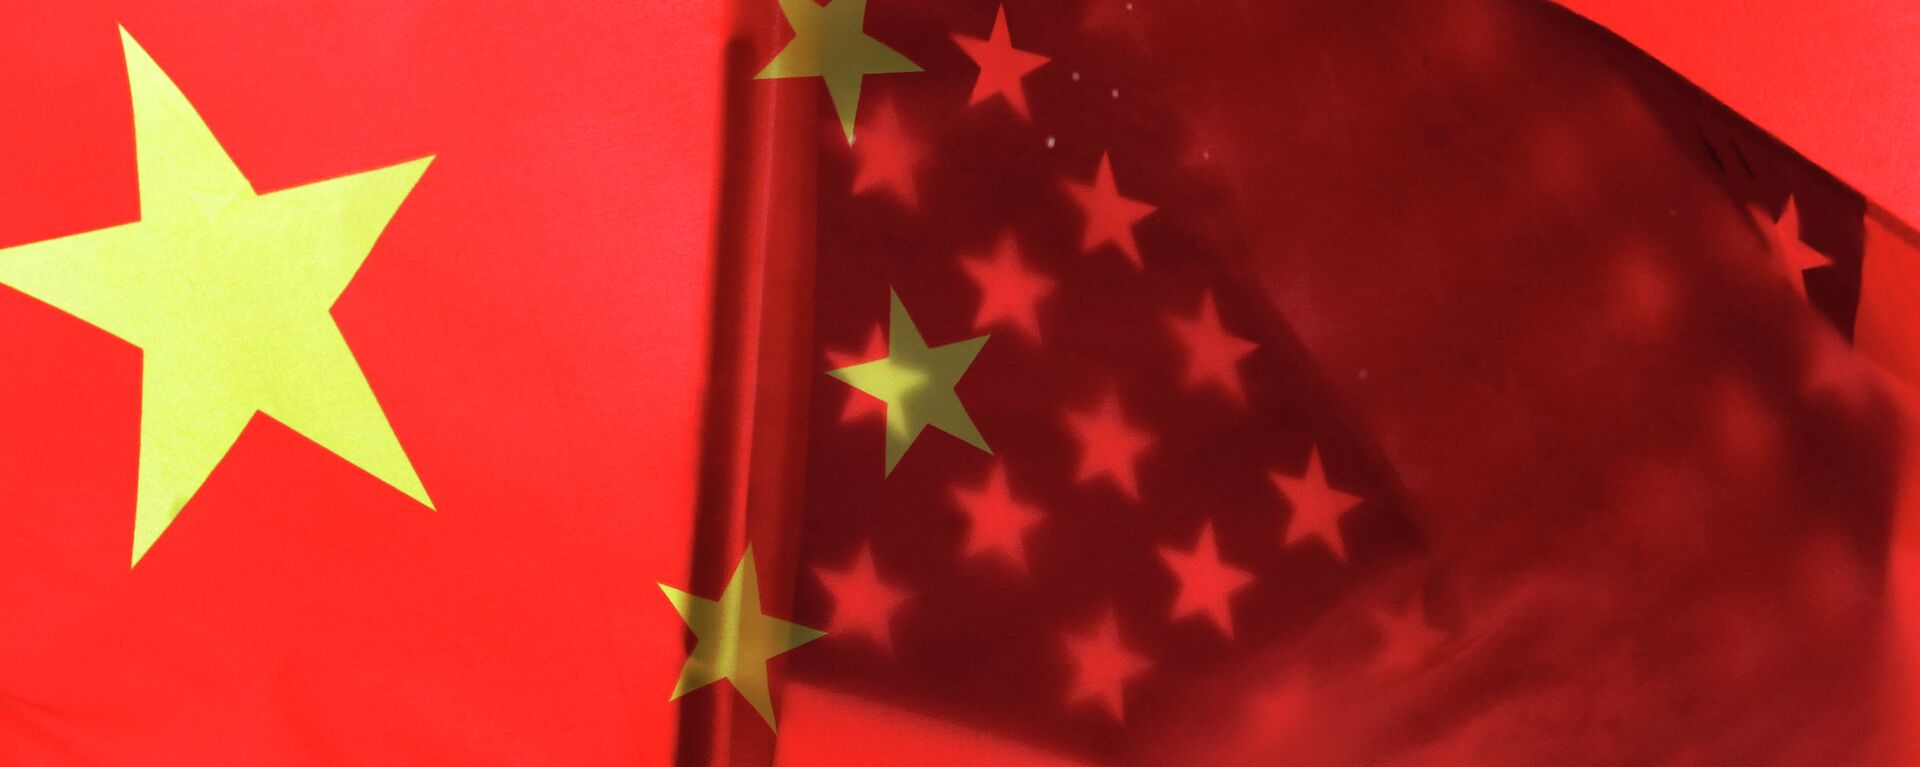 Banderas de China y EEUU - Sputnik Mundo, 1920, 25.11.2021